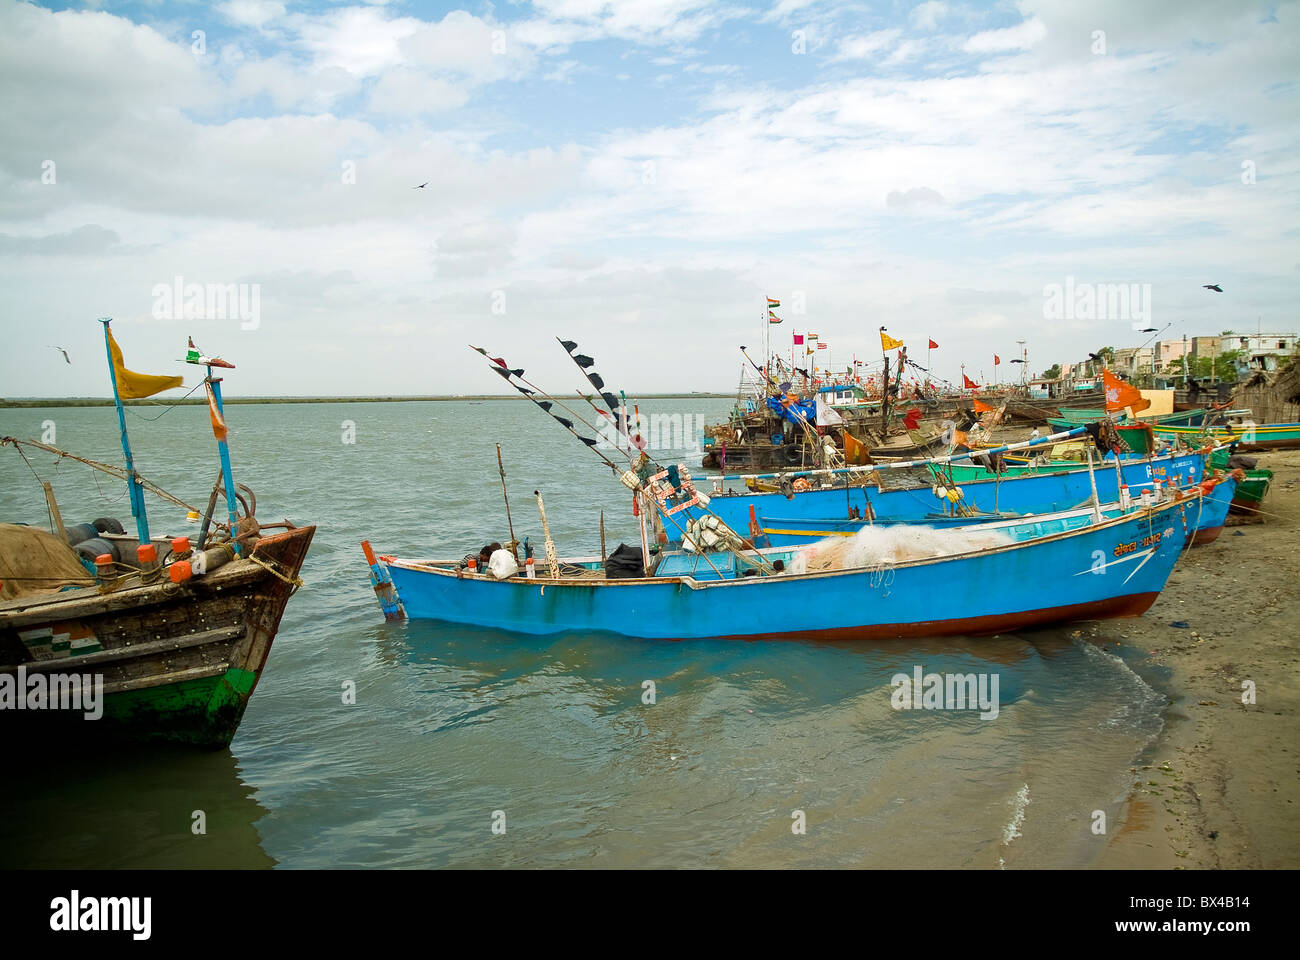 Bateaux de pêche dans un petit village de pêcheurs sur l'île de Diu, Inde Banque D'Images